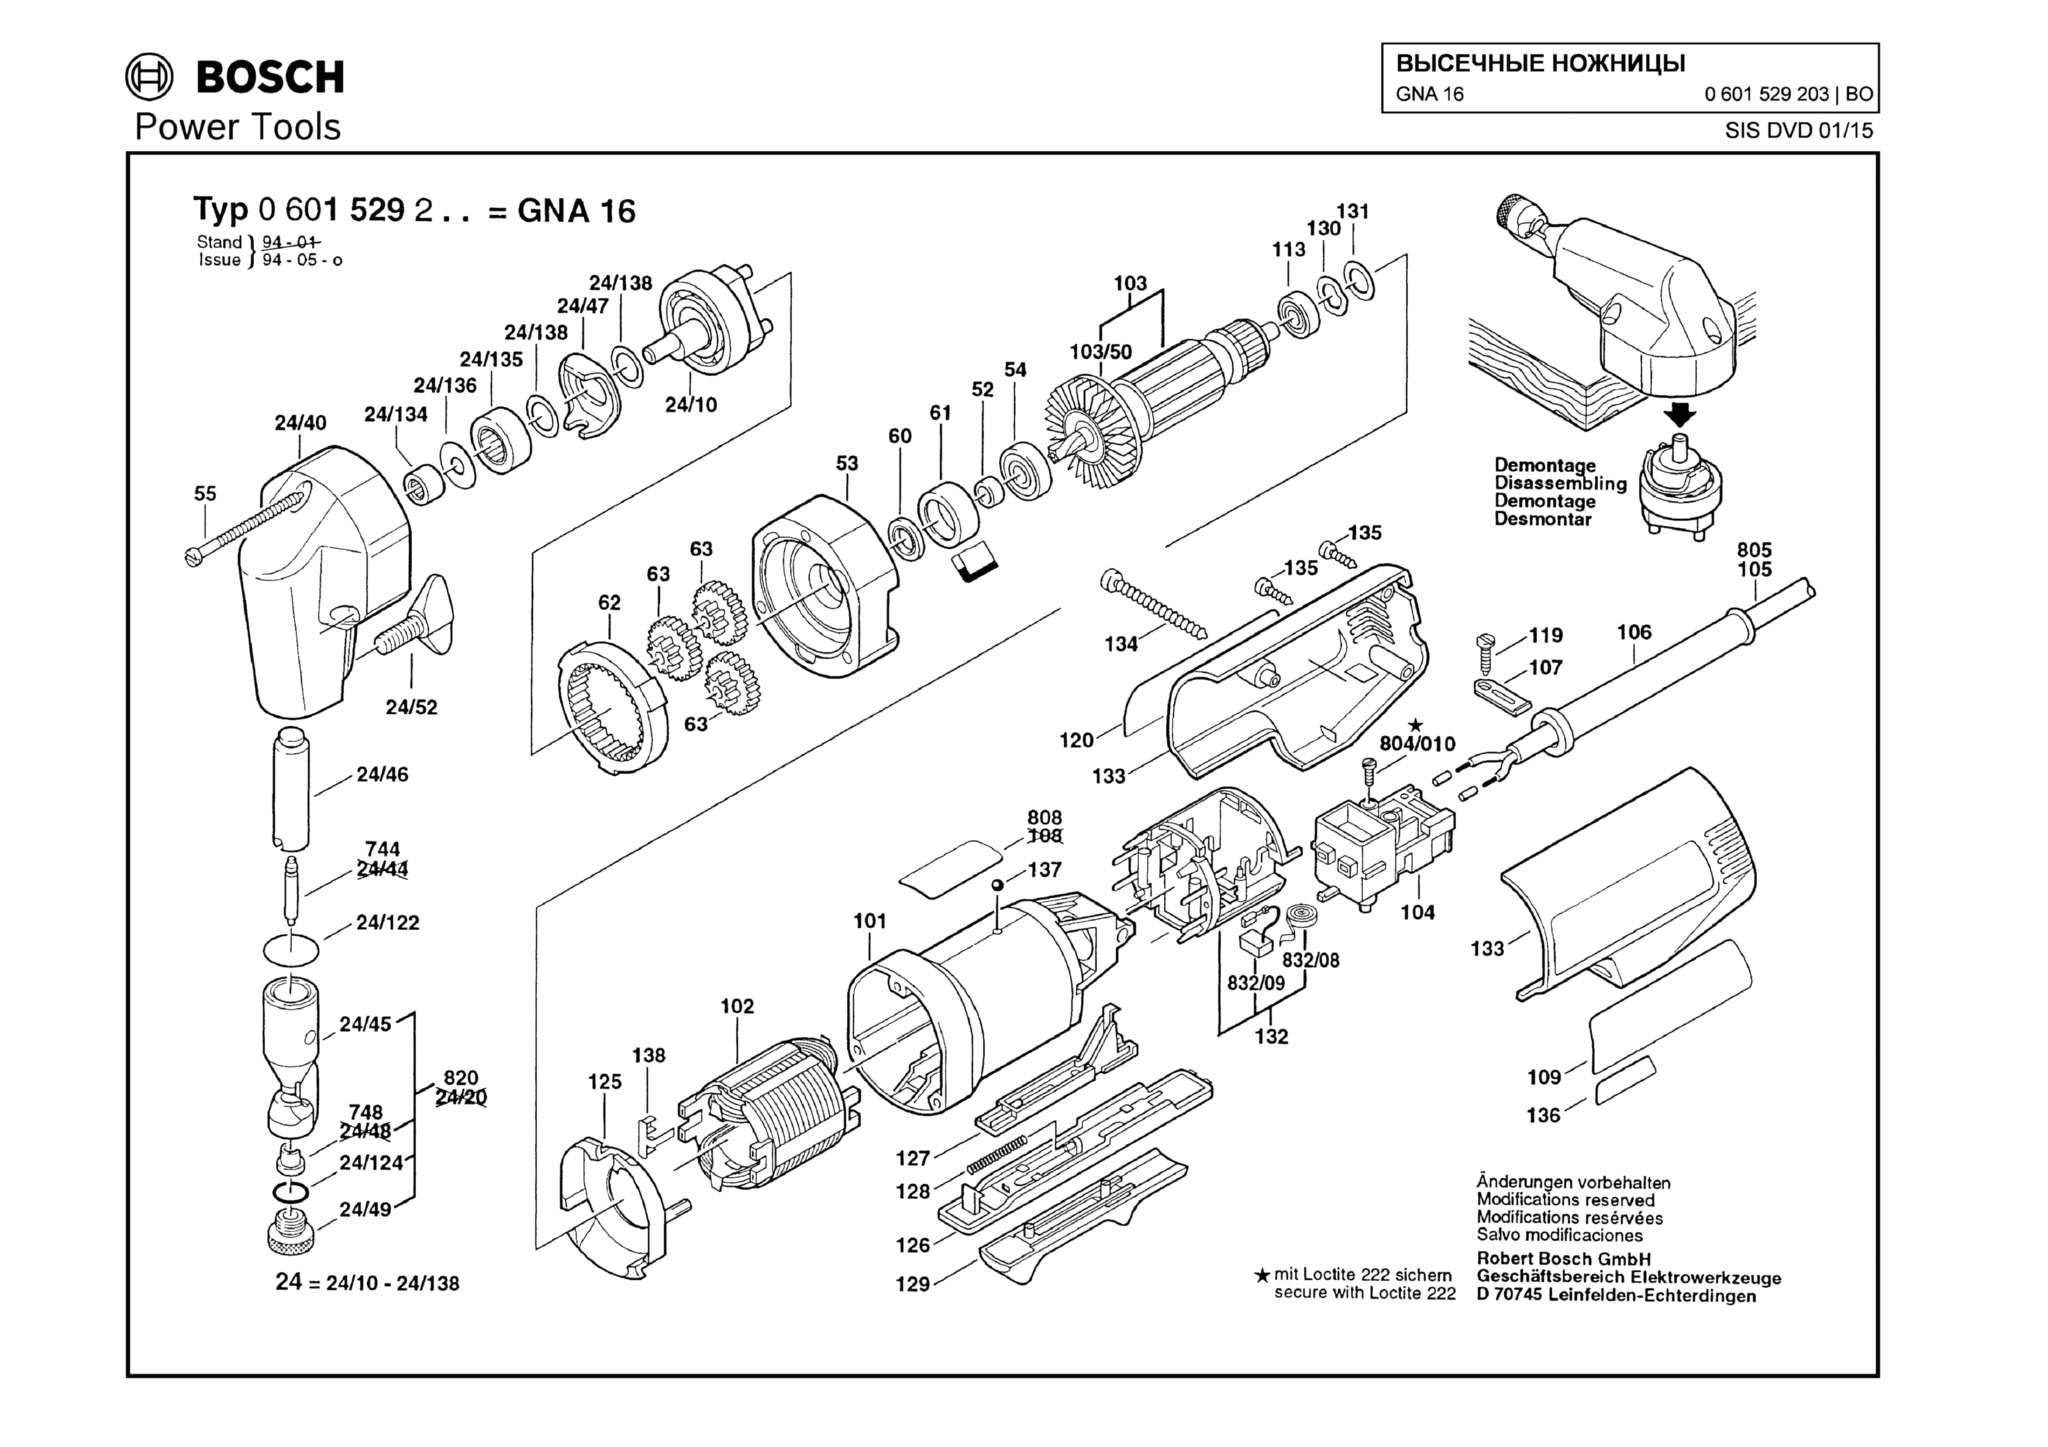 Запчасти, схема и деталировка Bosch GNA 16 (ТИП 0601529203)